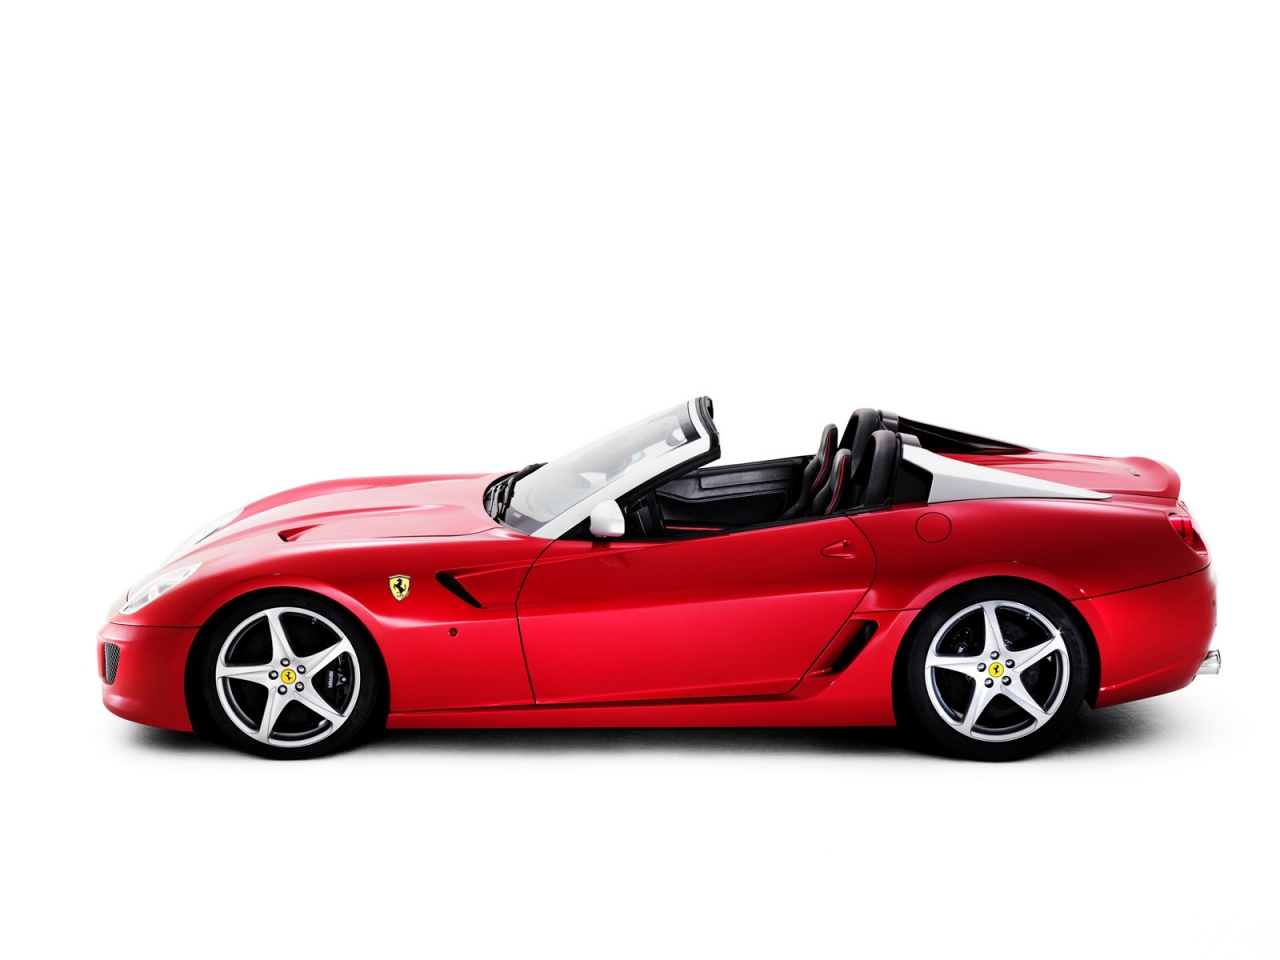 Ferrari SA Aperta Studio for 1280 x 960 resolution